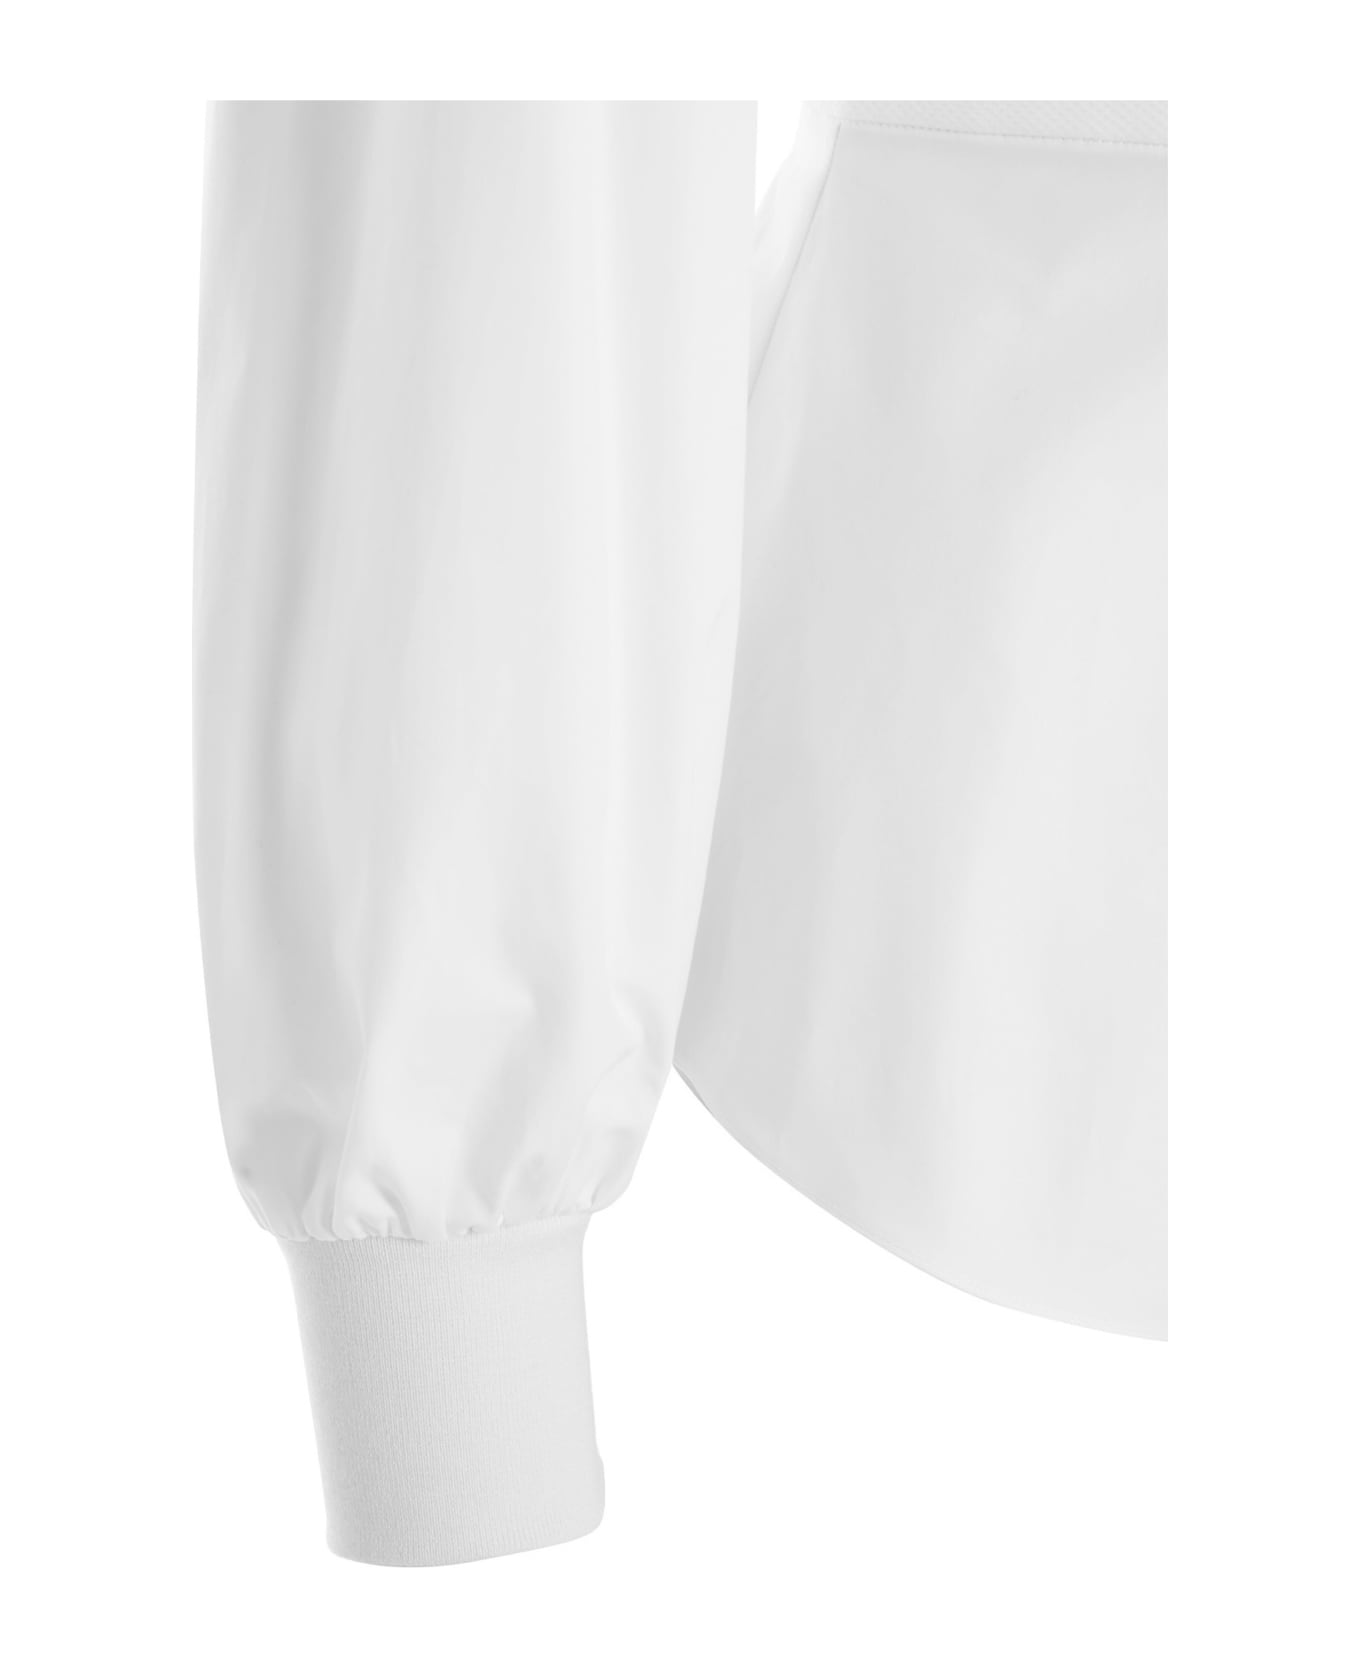 Alexander McQueen Cuffed Cotton Shirt - Bianco